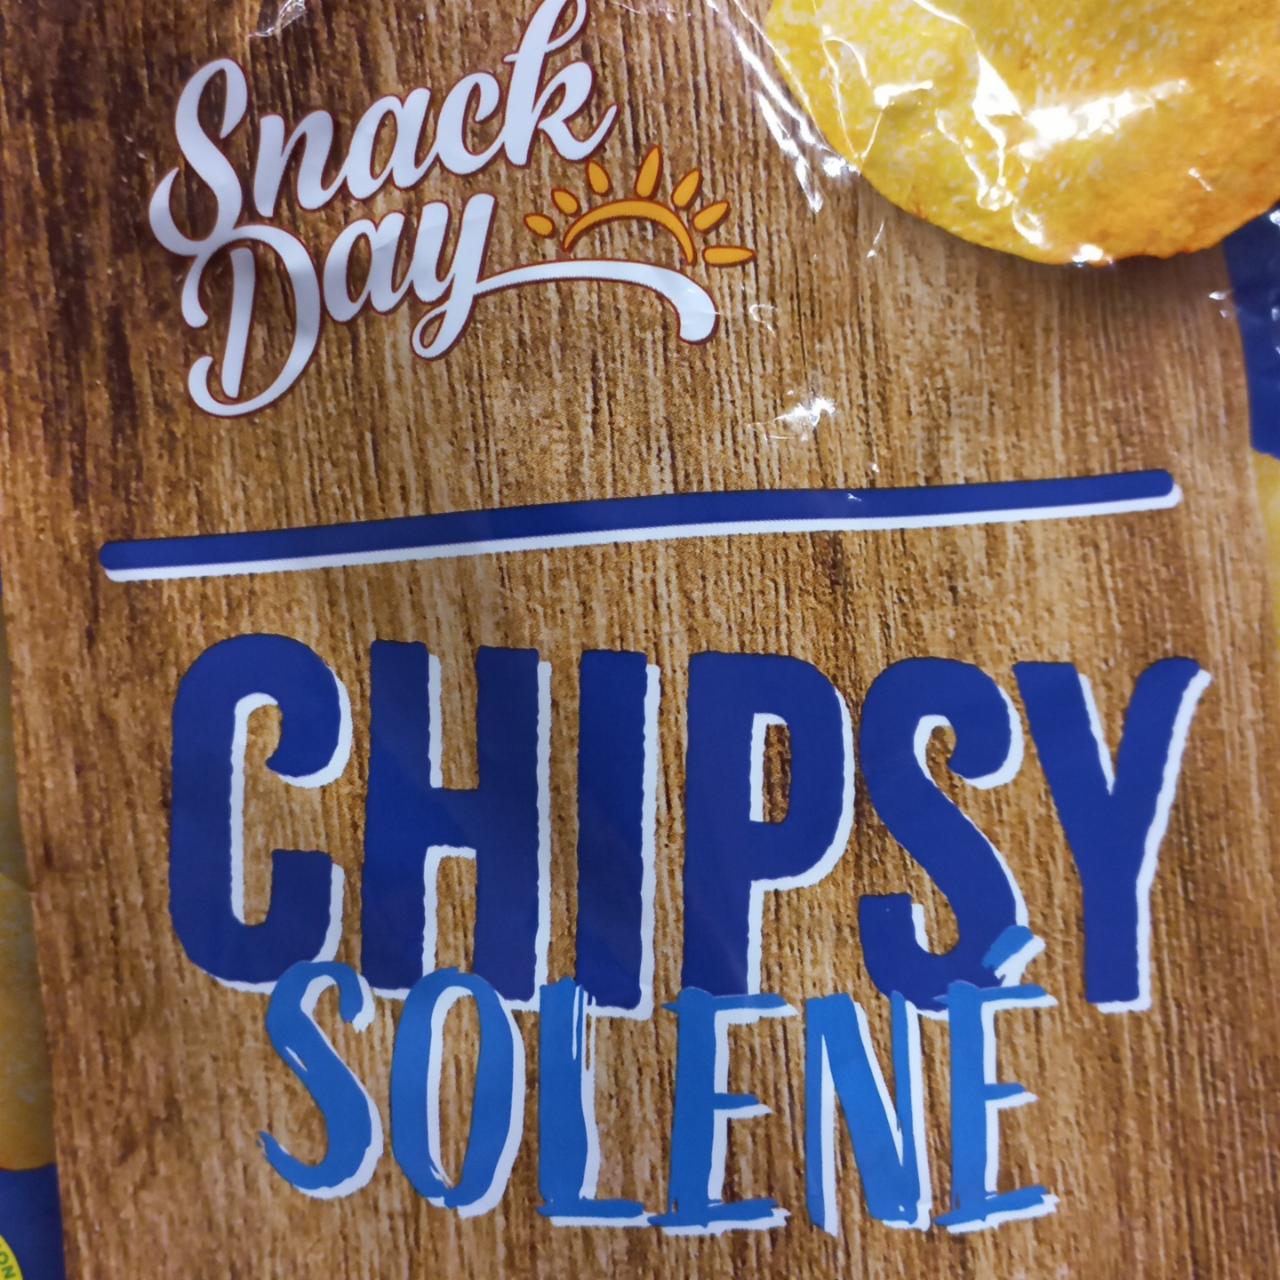 Fotografie - Chipsy solené Snack Day